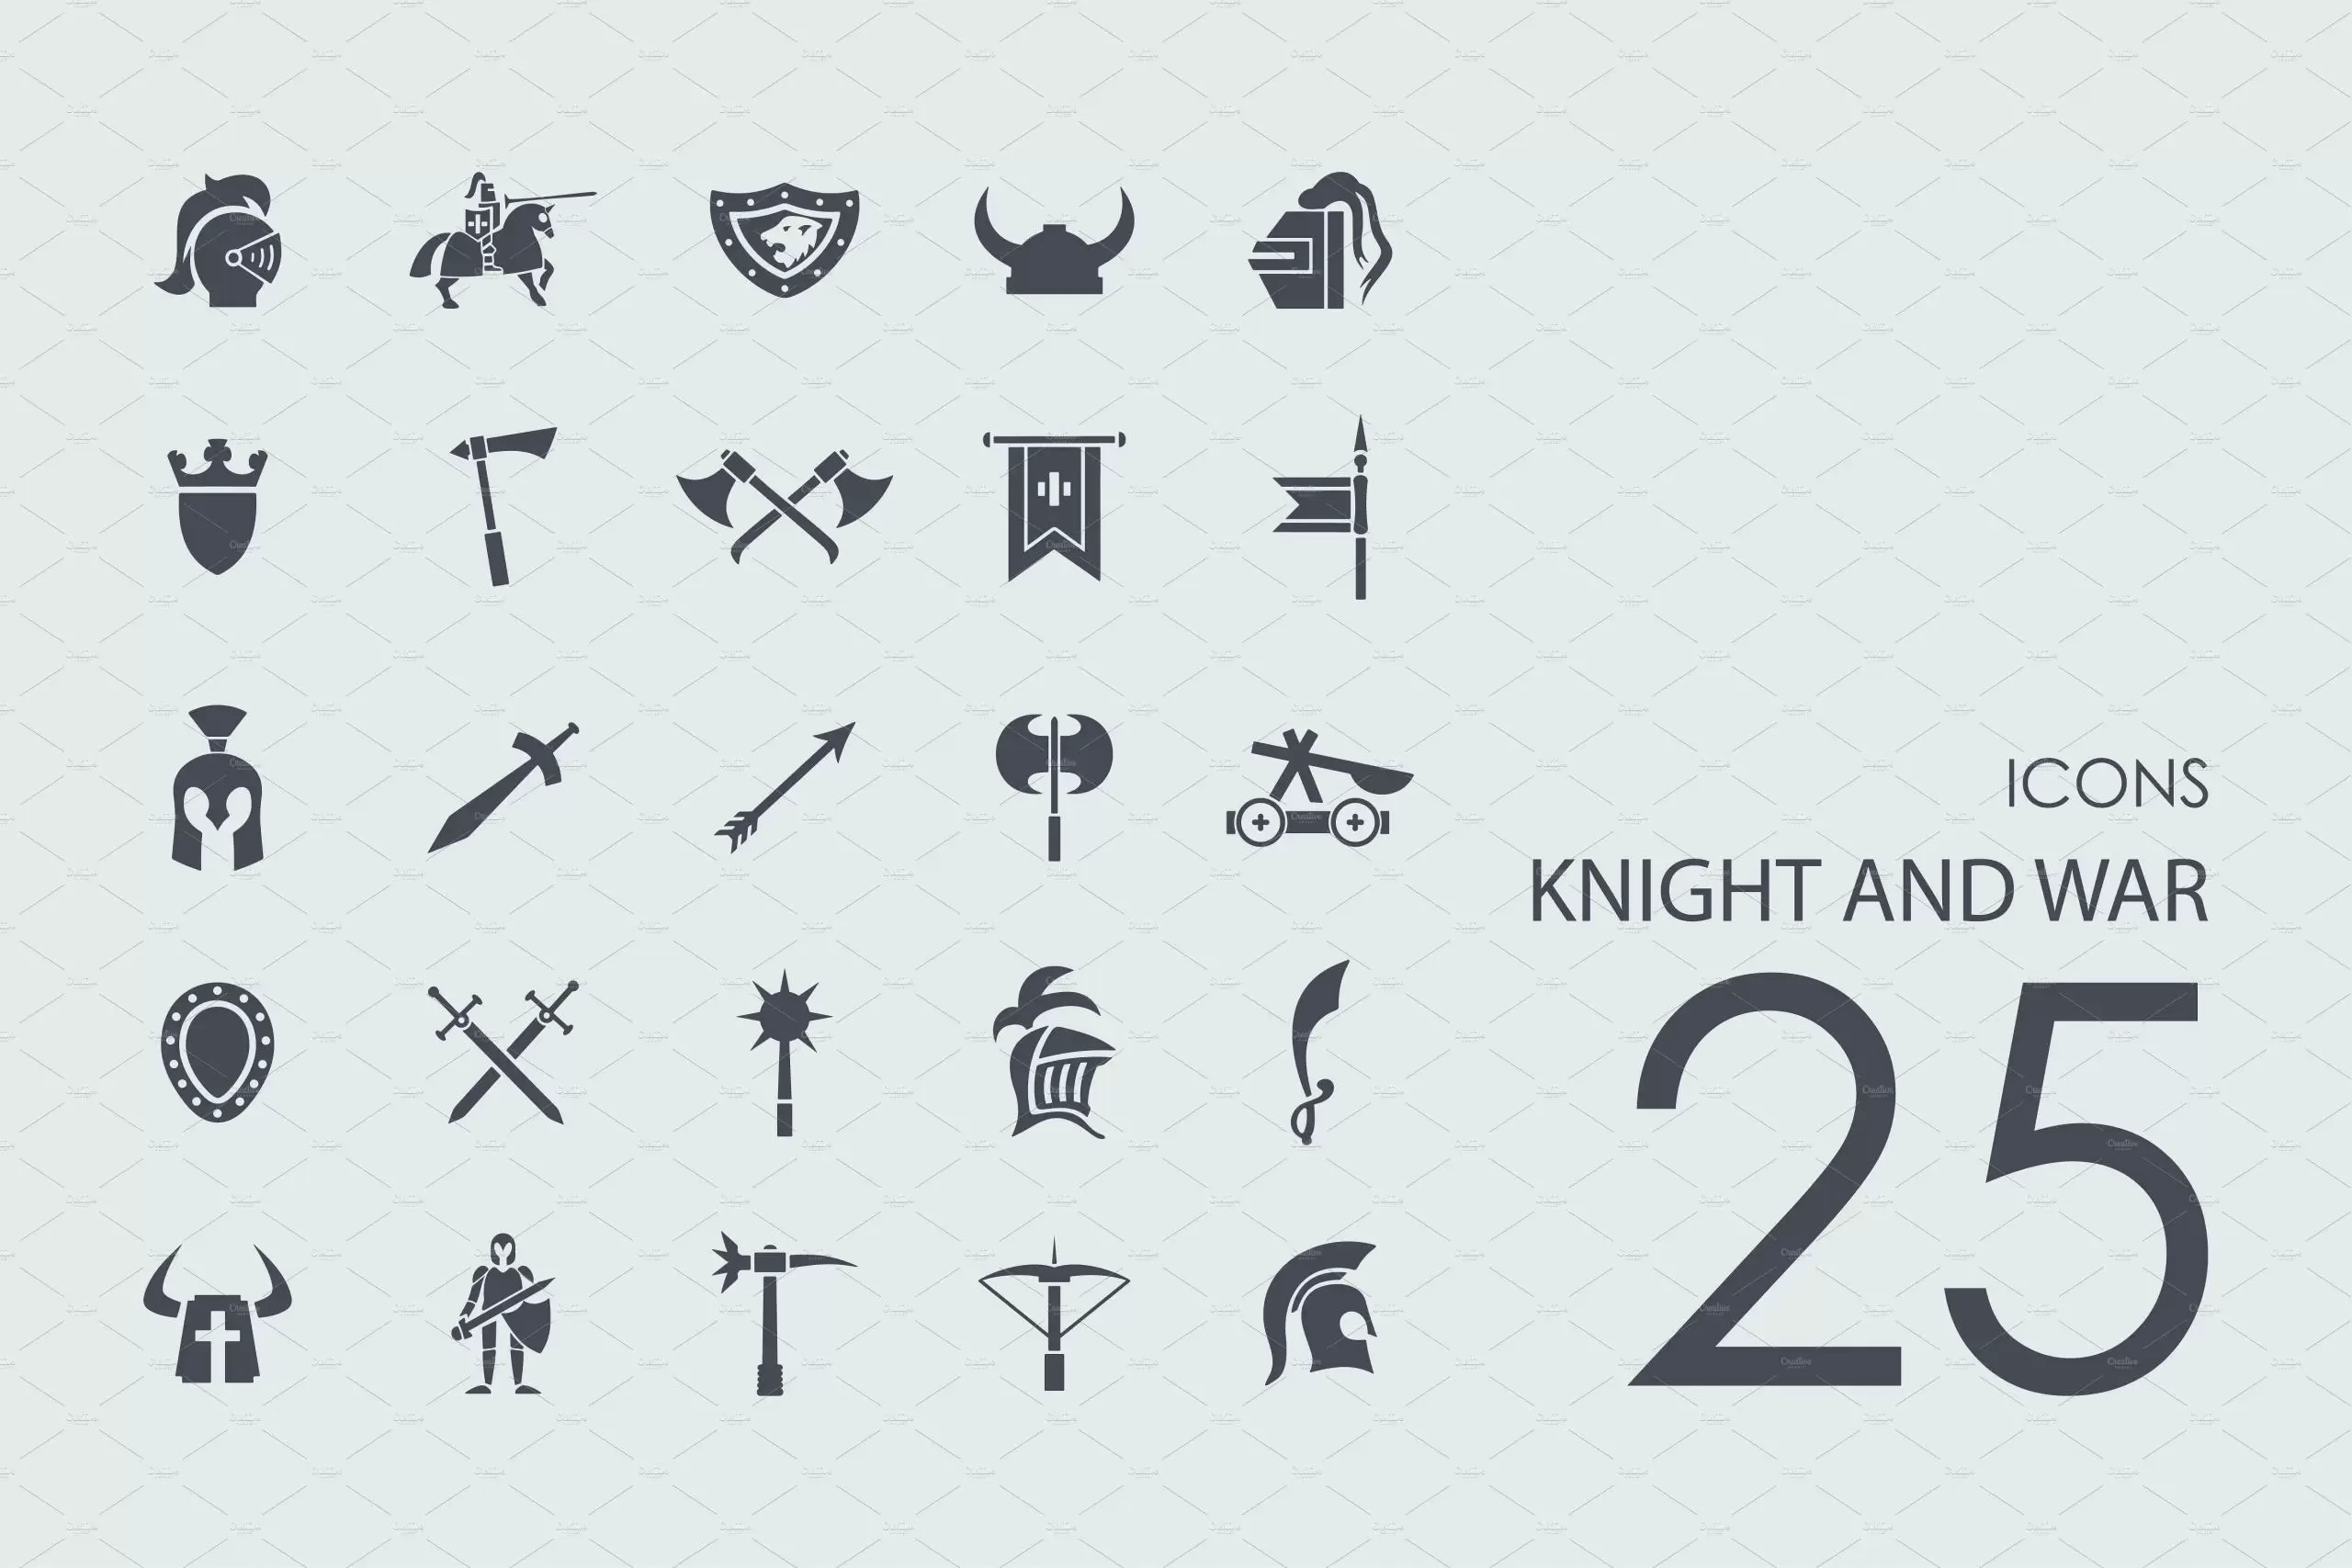 骑士图标素材 25 knight and war icons插图